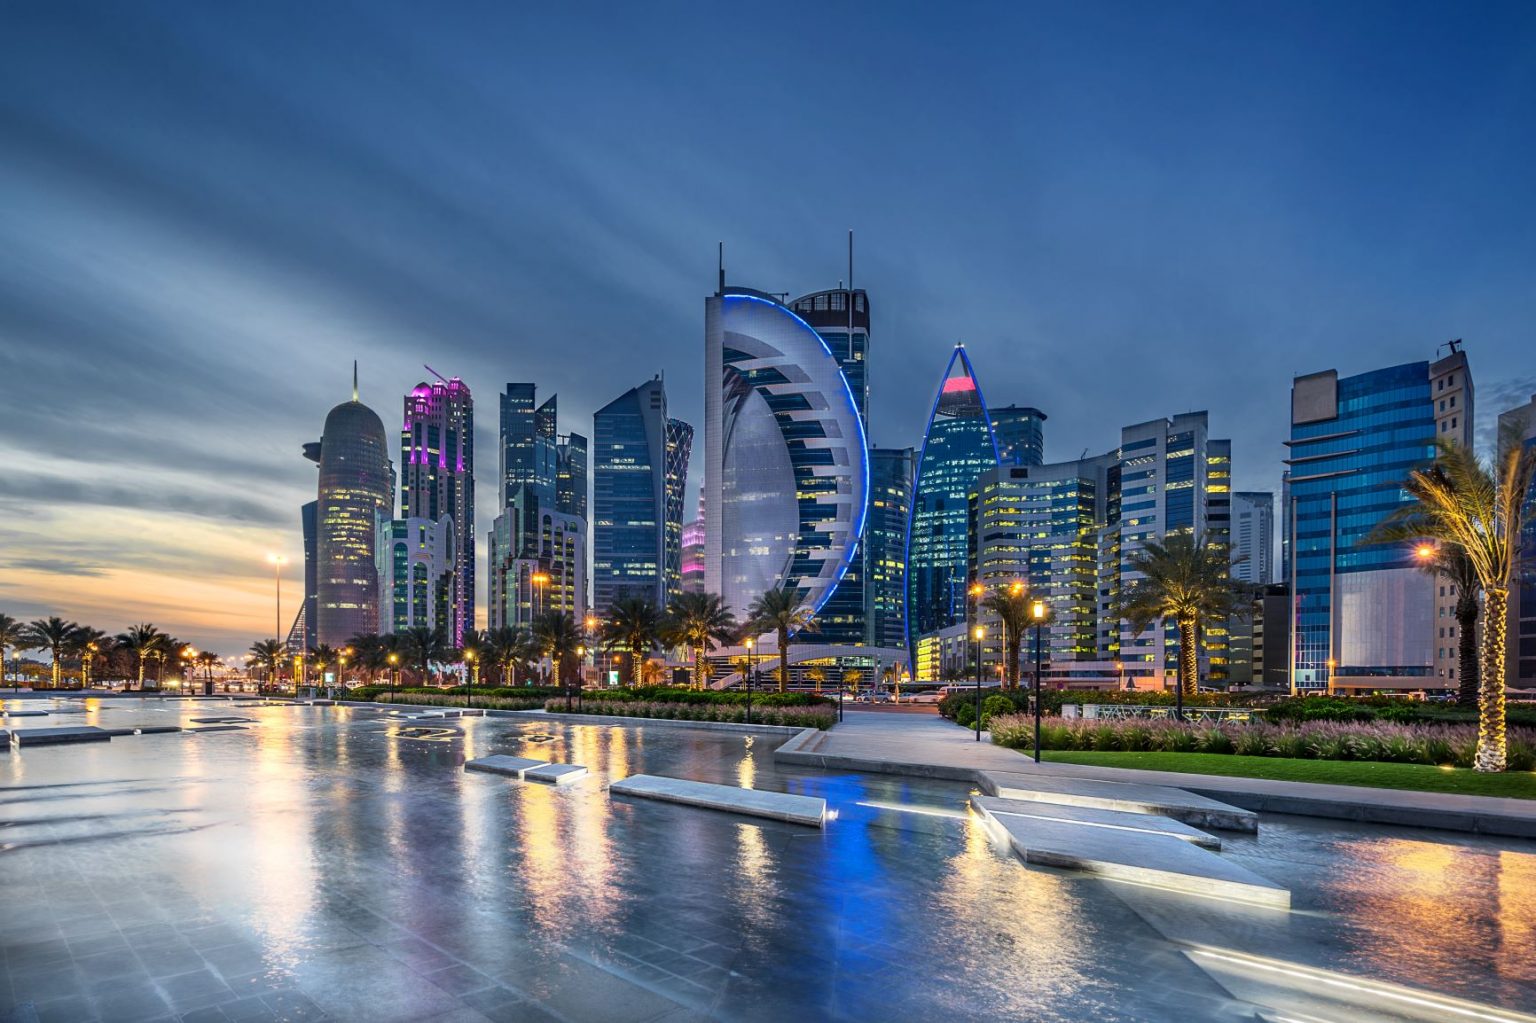 Cityscape in Qatar along Doha bay.